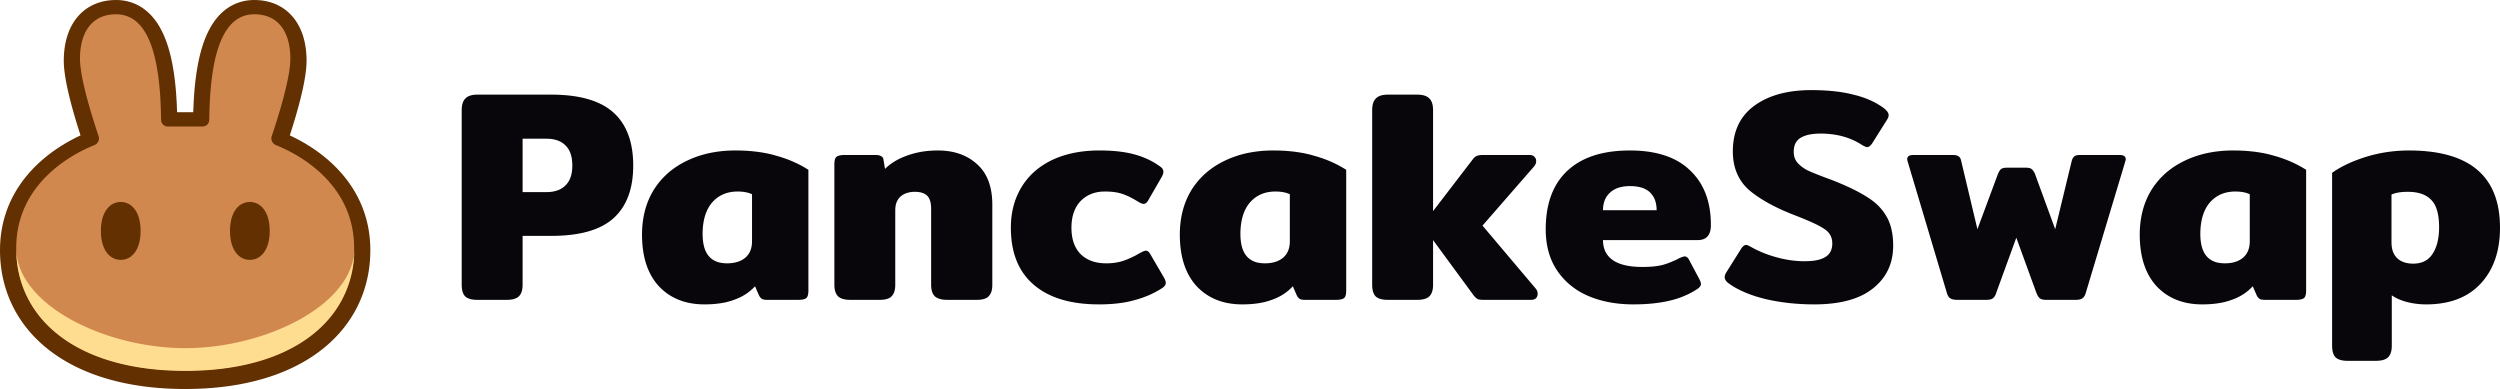 full-pancakeswap-logo.png